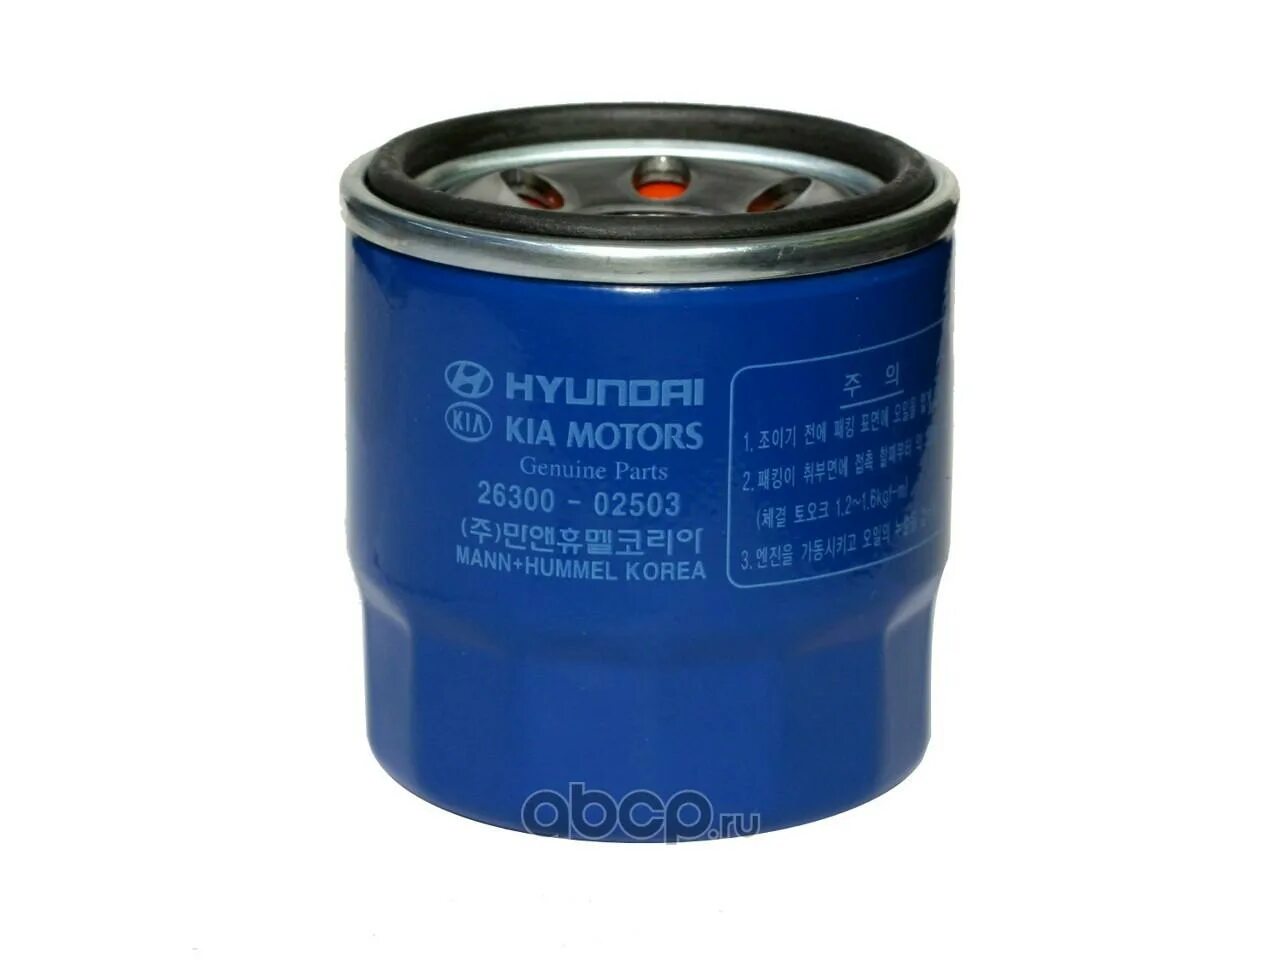 Масляный фильтр Hyundai 26300-02503. Фильтр масляный Hyundai Solaris 1.4. Hyundai/Kia 2630002503. Kia 2630002503 - фильтр масляный. Фильтр масла хендай солярис